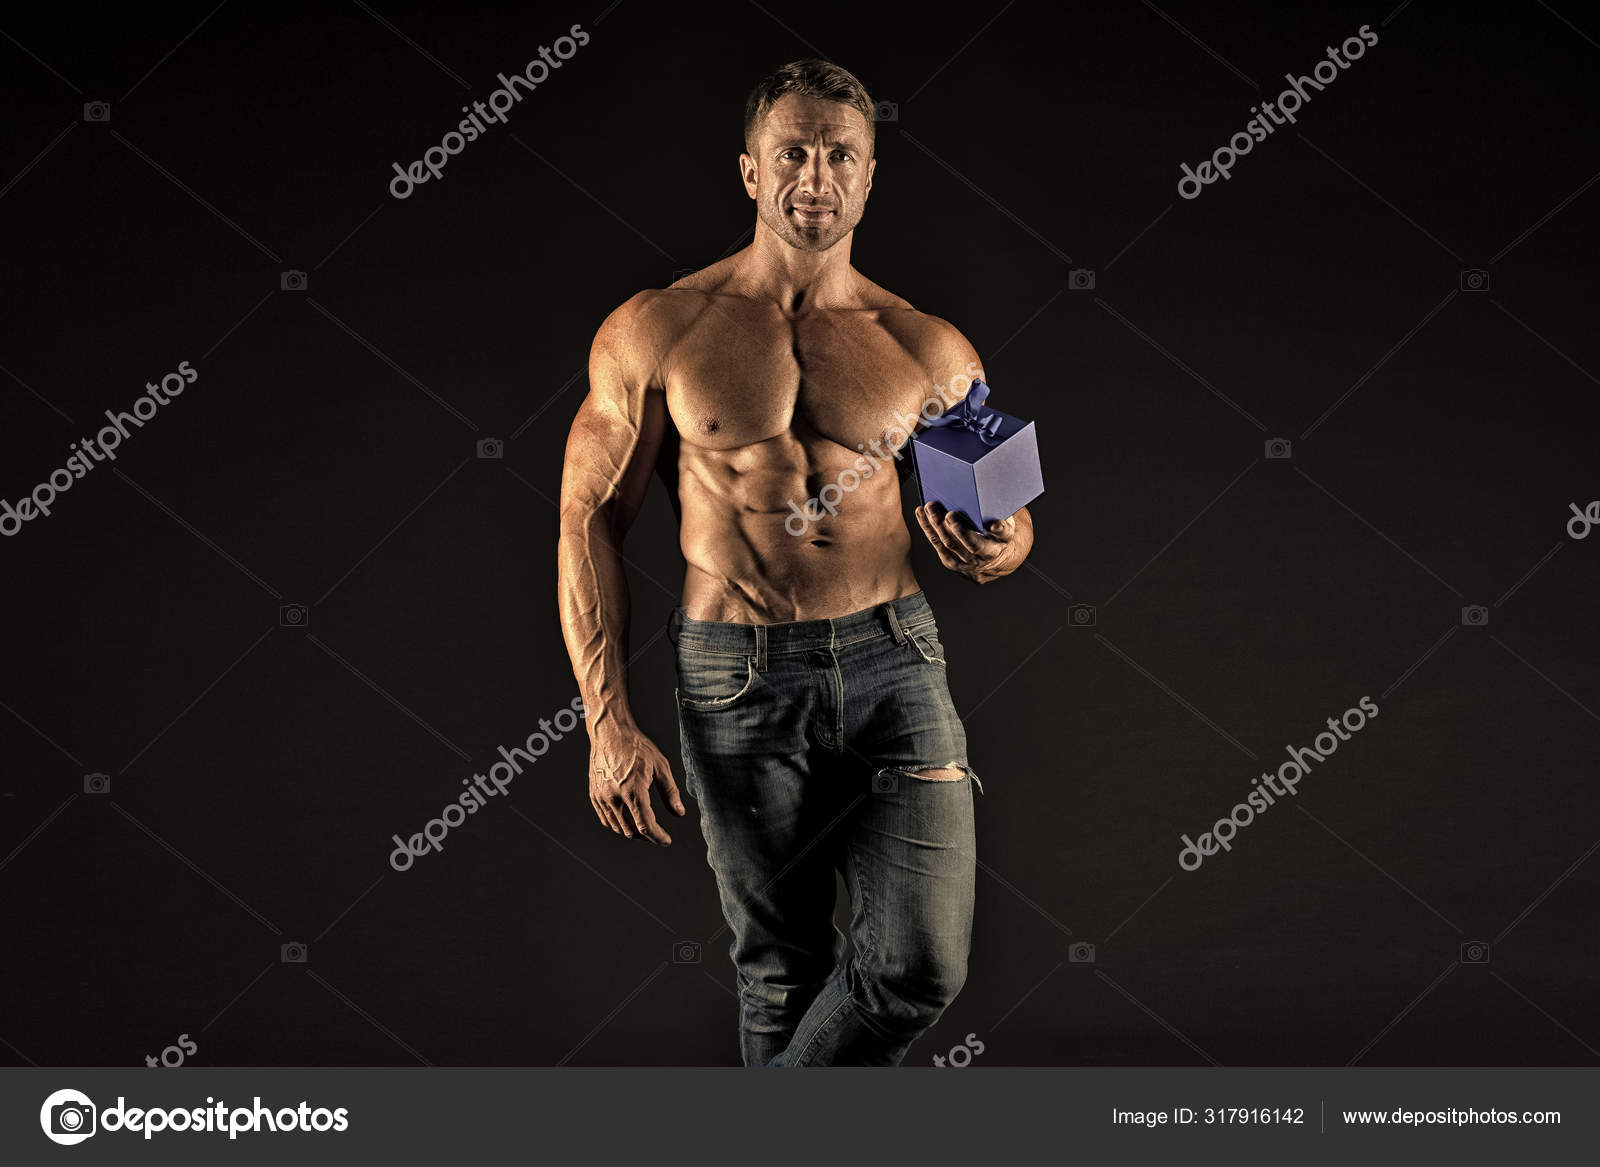 https://st3.depositphotos.com/2760050/31791/i/1600/depositphotos_317916142-stock-photo-something-special-macho-muscular-torso.jpg